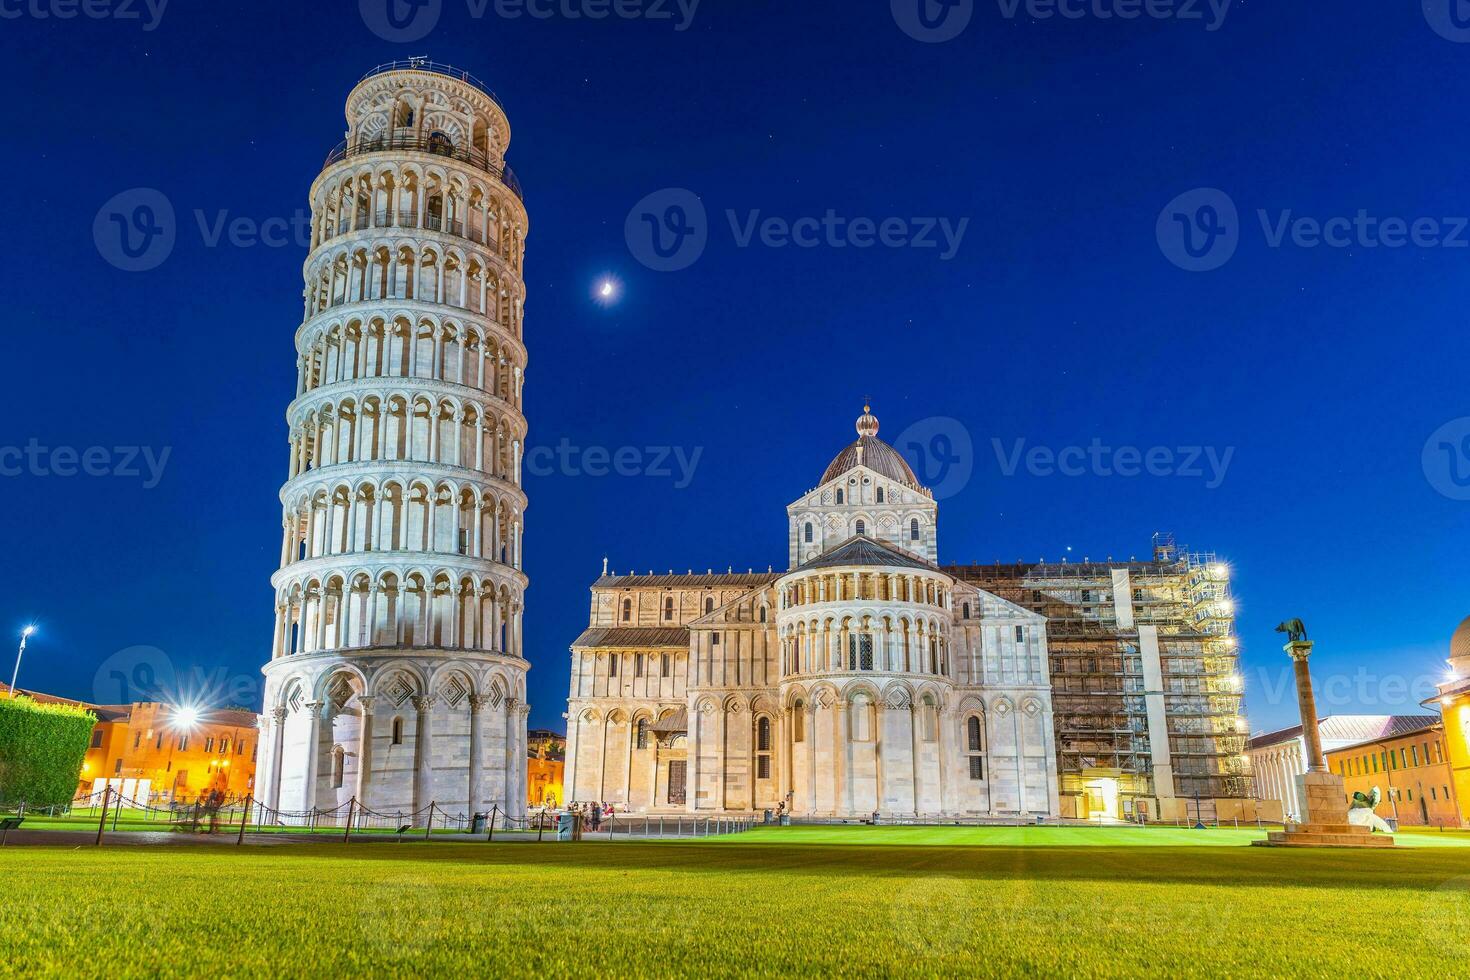 le célèbre penché la tour dans pise, Italie photo